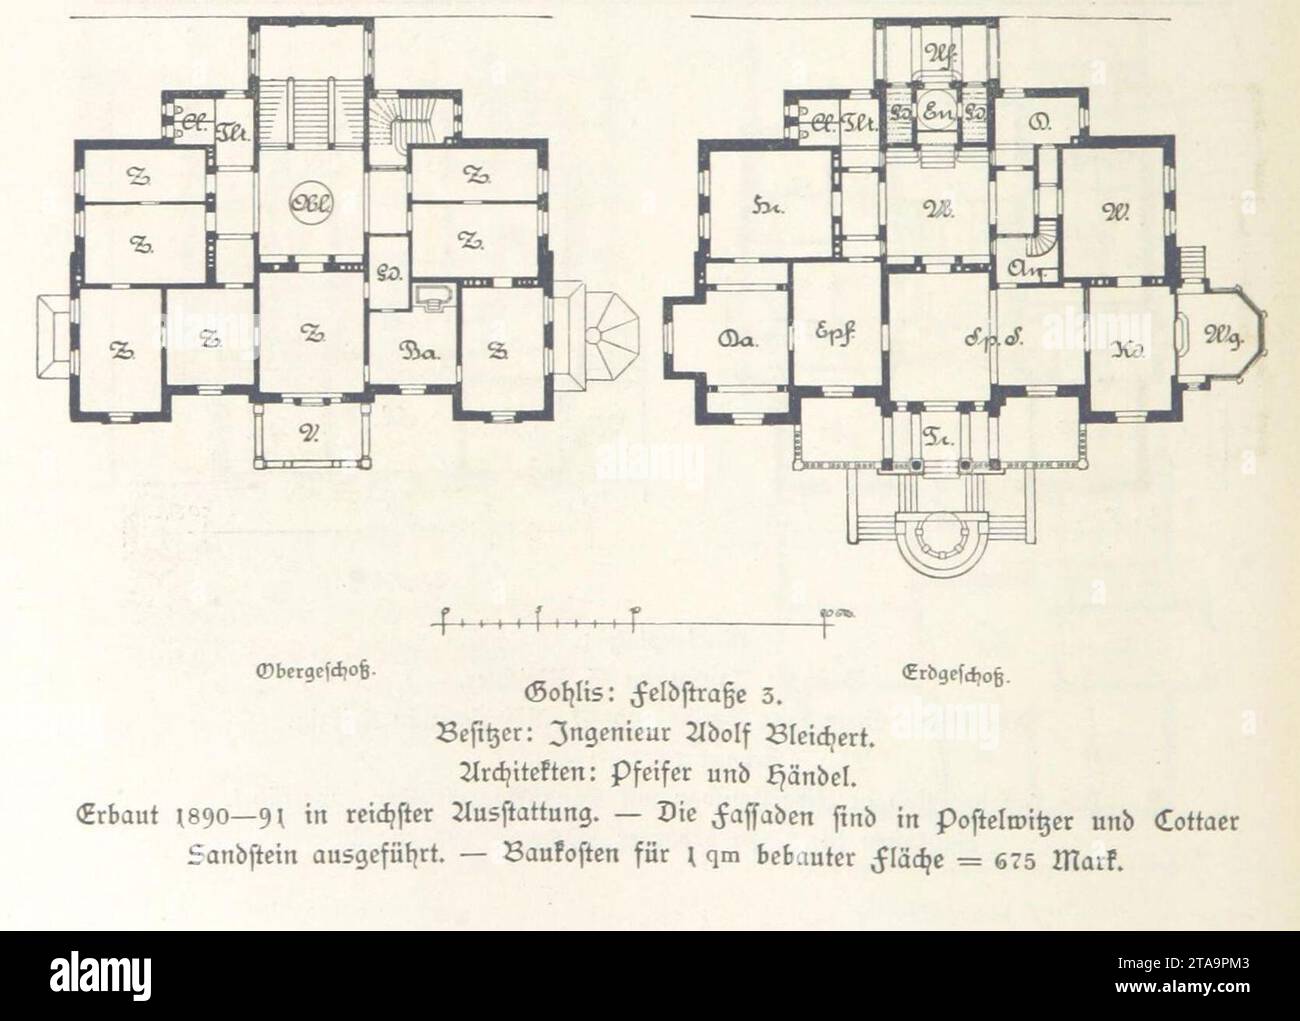 Villa Hilda (Leipzig, Lützowstraße 19) Adolf Bleichert (Pfeifer & Händel) Grundriss - leipzig und seine bauten (1892), S. 376. Stock Photo